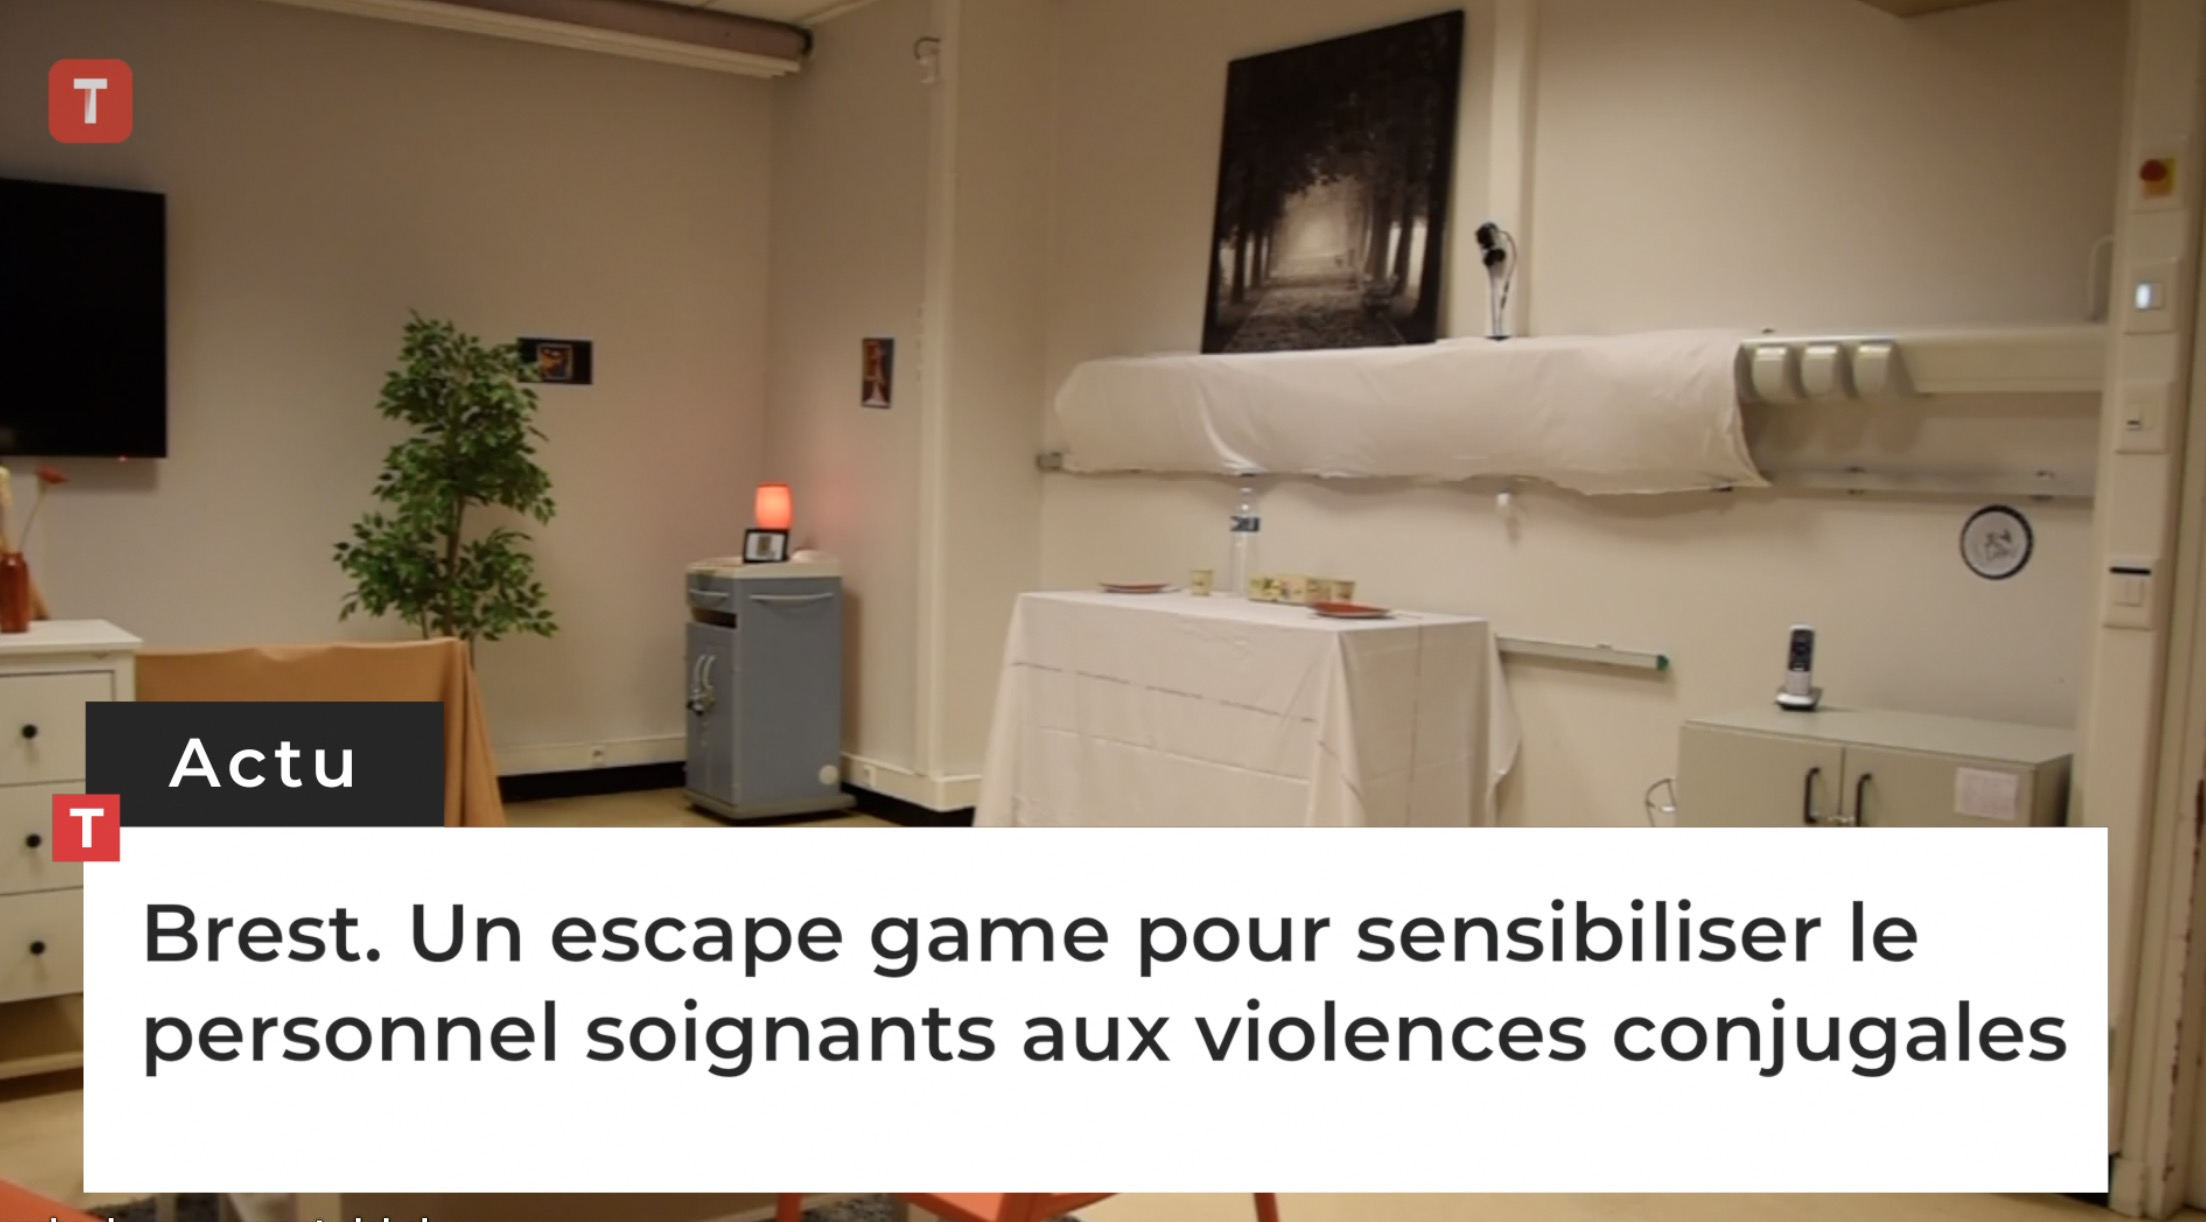 Brest. Un escape game pour sensibiliser le personnel soignants aux violences conjugales (Le Télégramme)